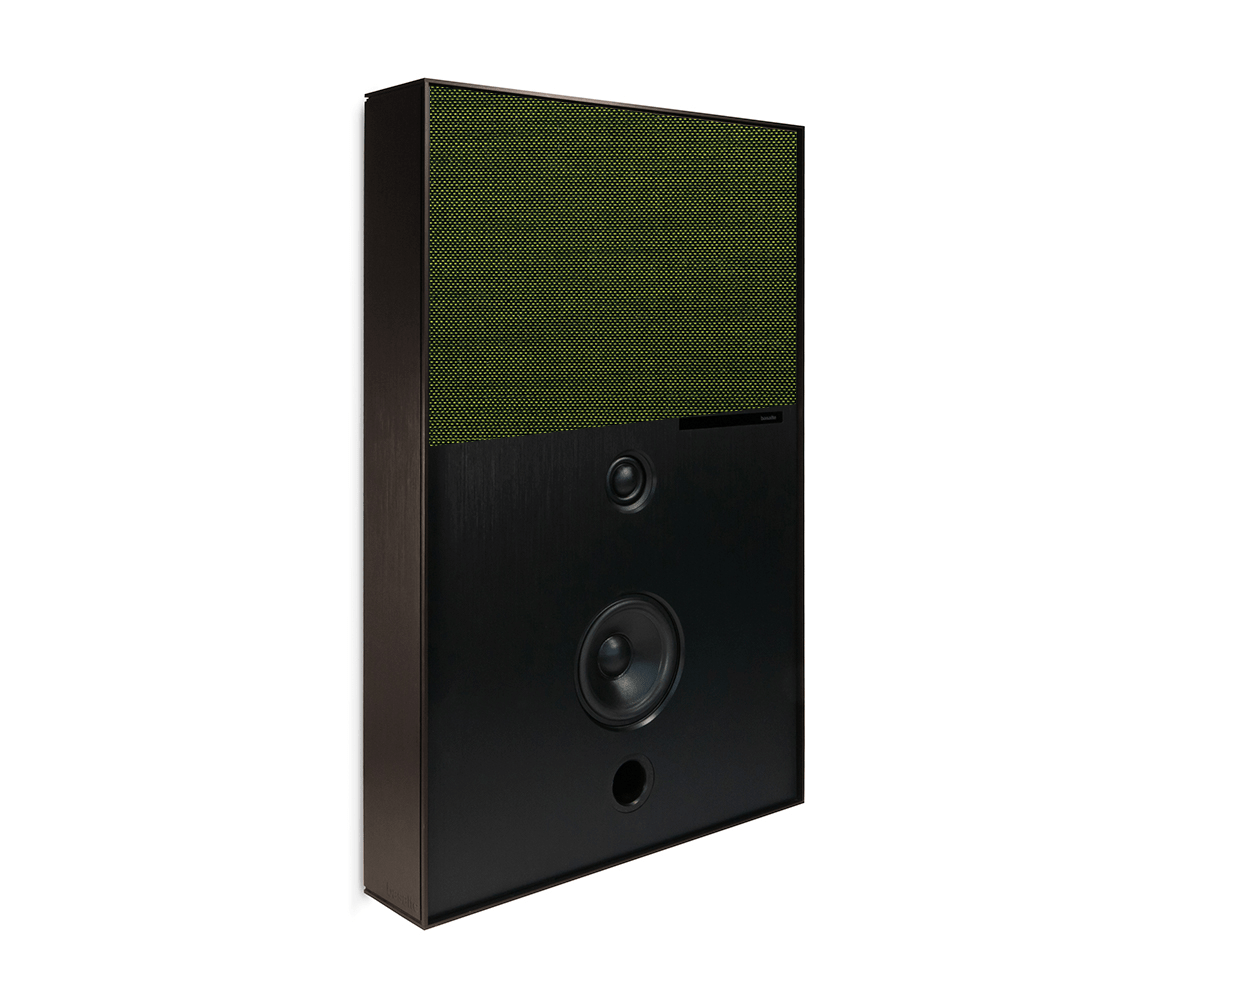 bronze and neon green aalto d3 active speaker